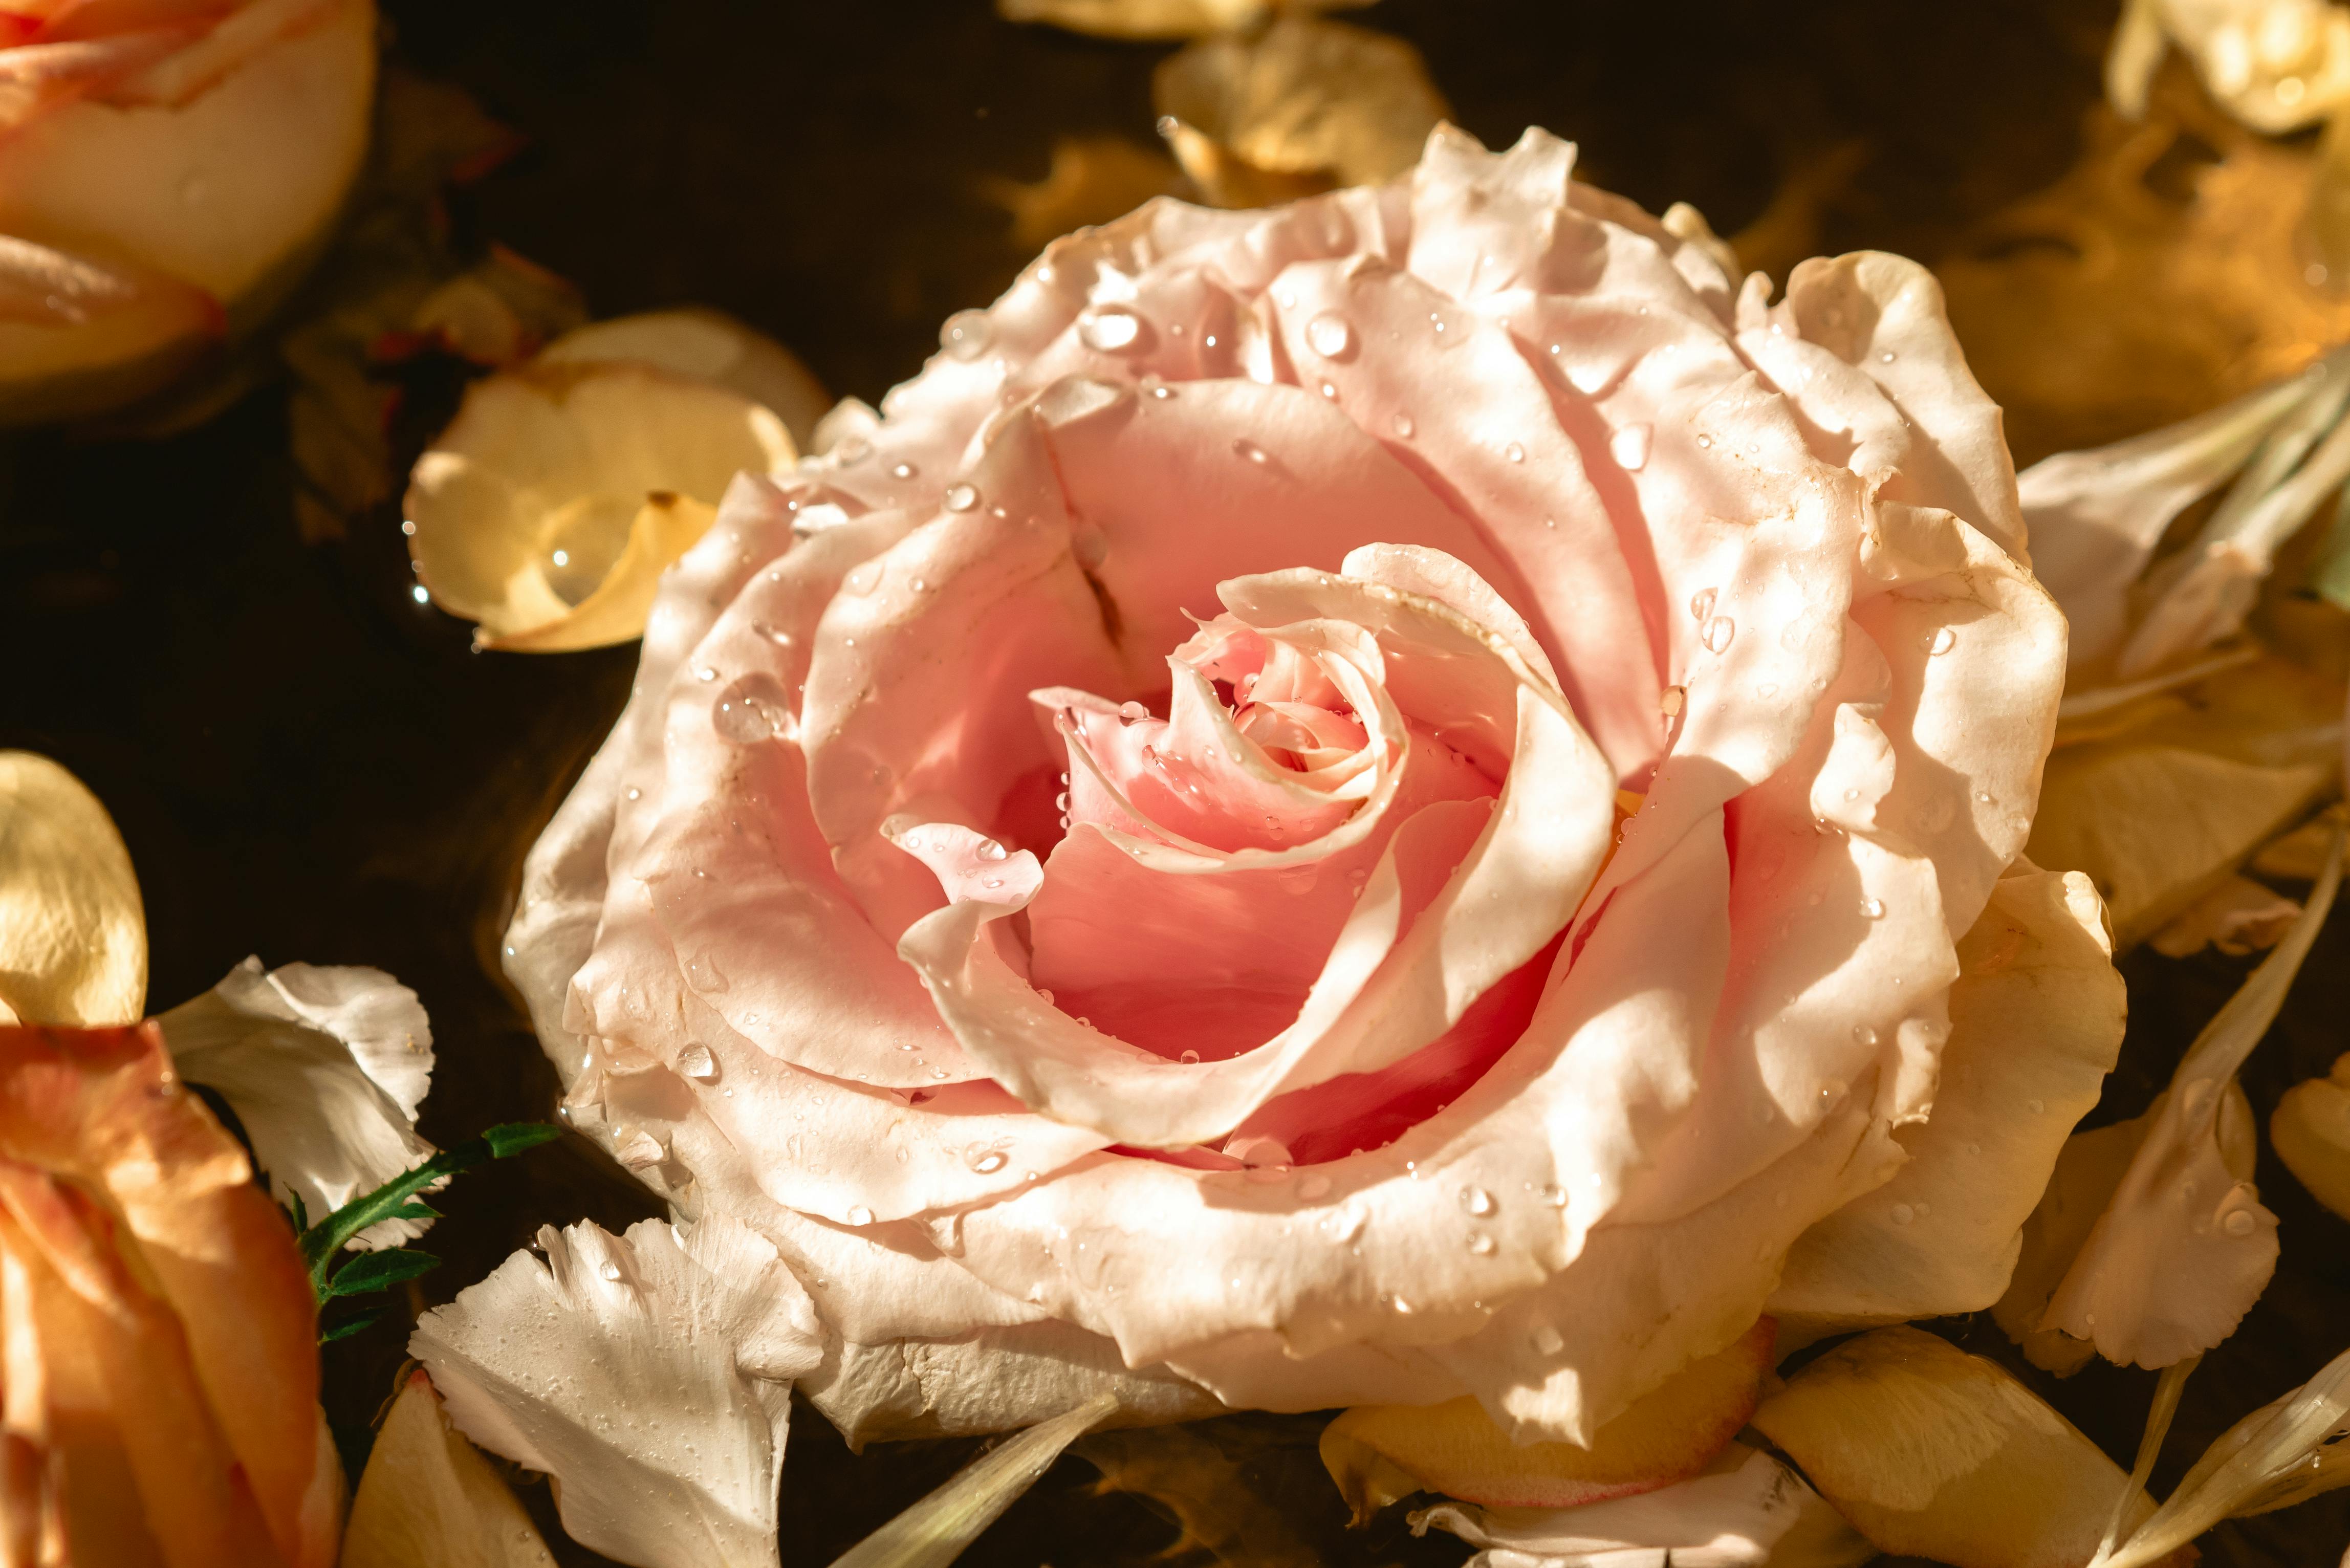 Bức hình miễn phí này chắc chắn sẽ khiến bạn thích thú với hoa sen hồng và lá sen. Vẻ đẹp tươi mới của loài sen sẽ đưa bạn đến một thế giới nơi bạn có thể thoát khỏi những áp lực hàng ngày và tìm kiếm sự bình yên. Hãy xem hình và tận hưởng cảm giác nhẹ nhàng.